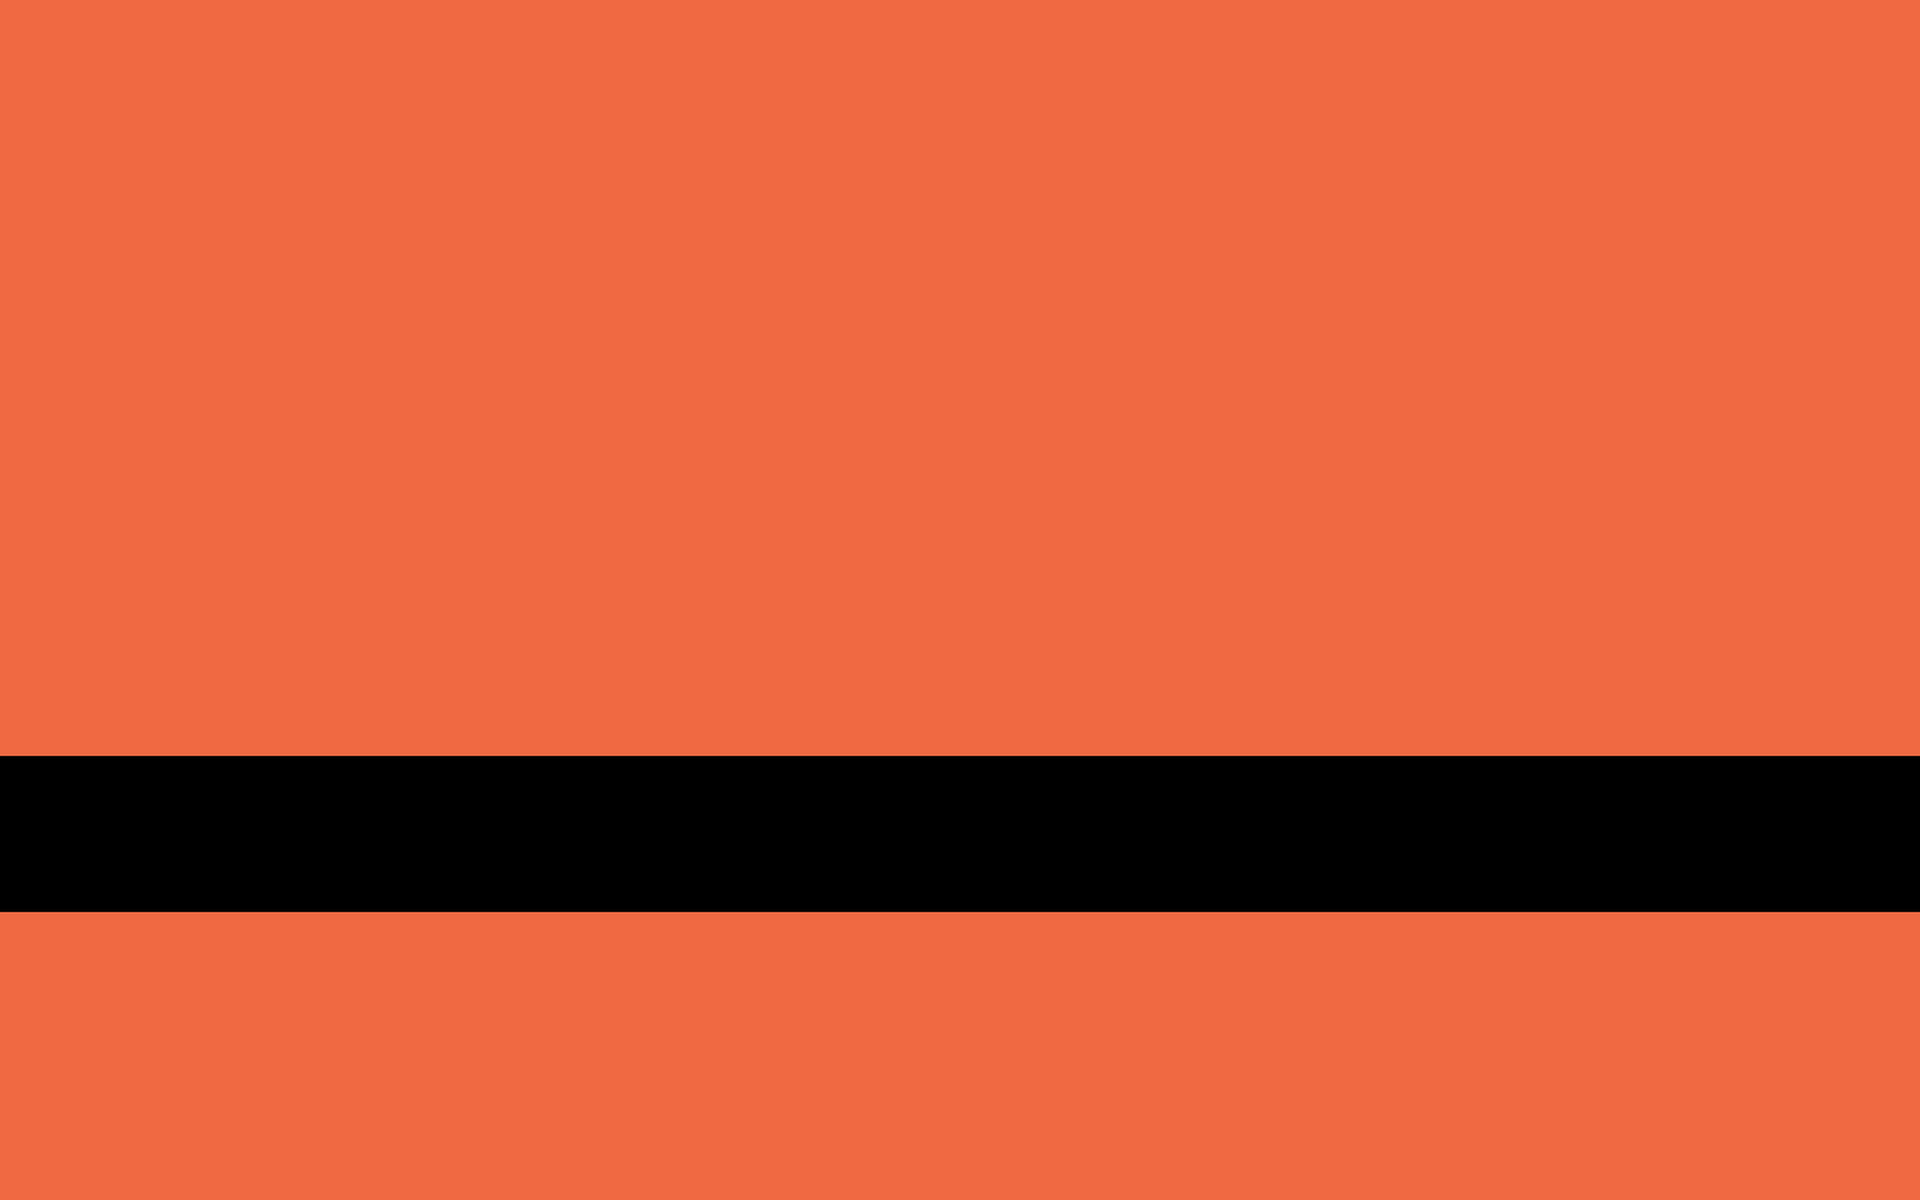  Międzynarodowa flaga uchodźców. Flaga jest prawie w całości pomarańczowa. Jednym elementem w innym kolorze jest czarny pas przecinający ją poziomo na wysokości 1/3 flagi od dołu. 